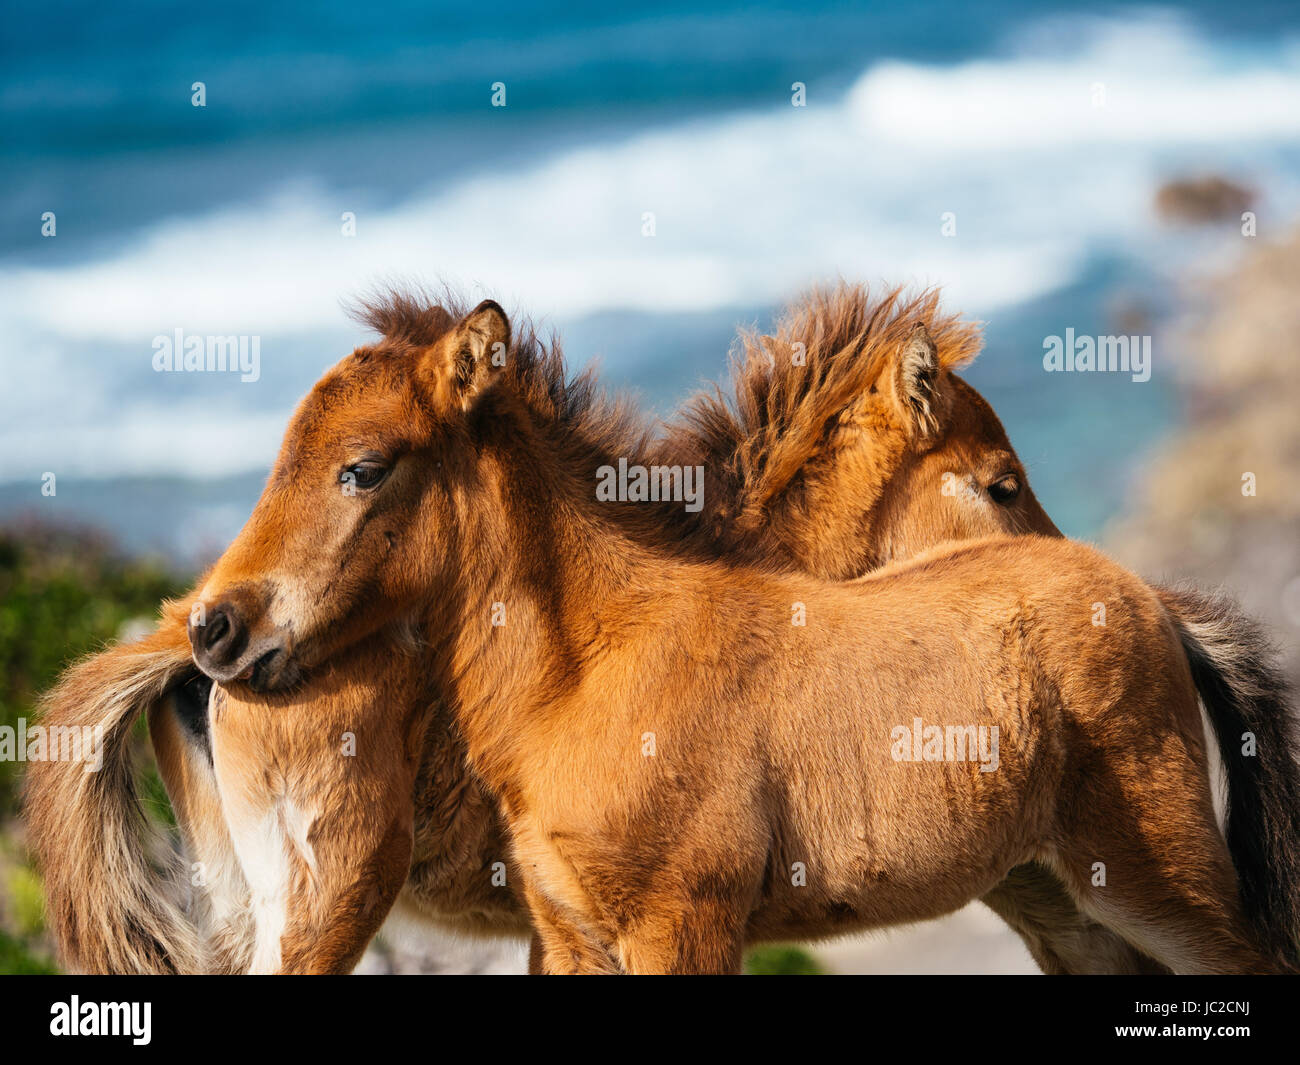 Yonaguni Horse Stock Photo